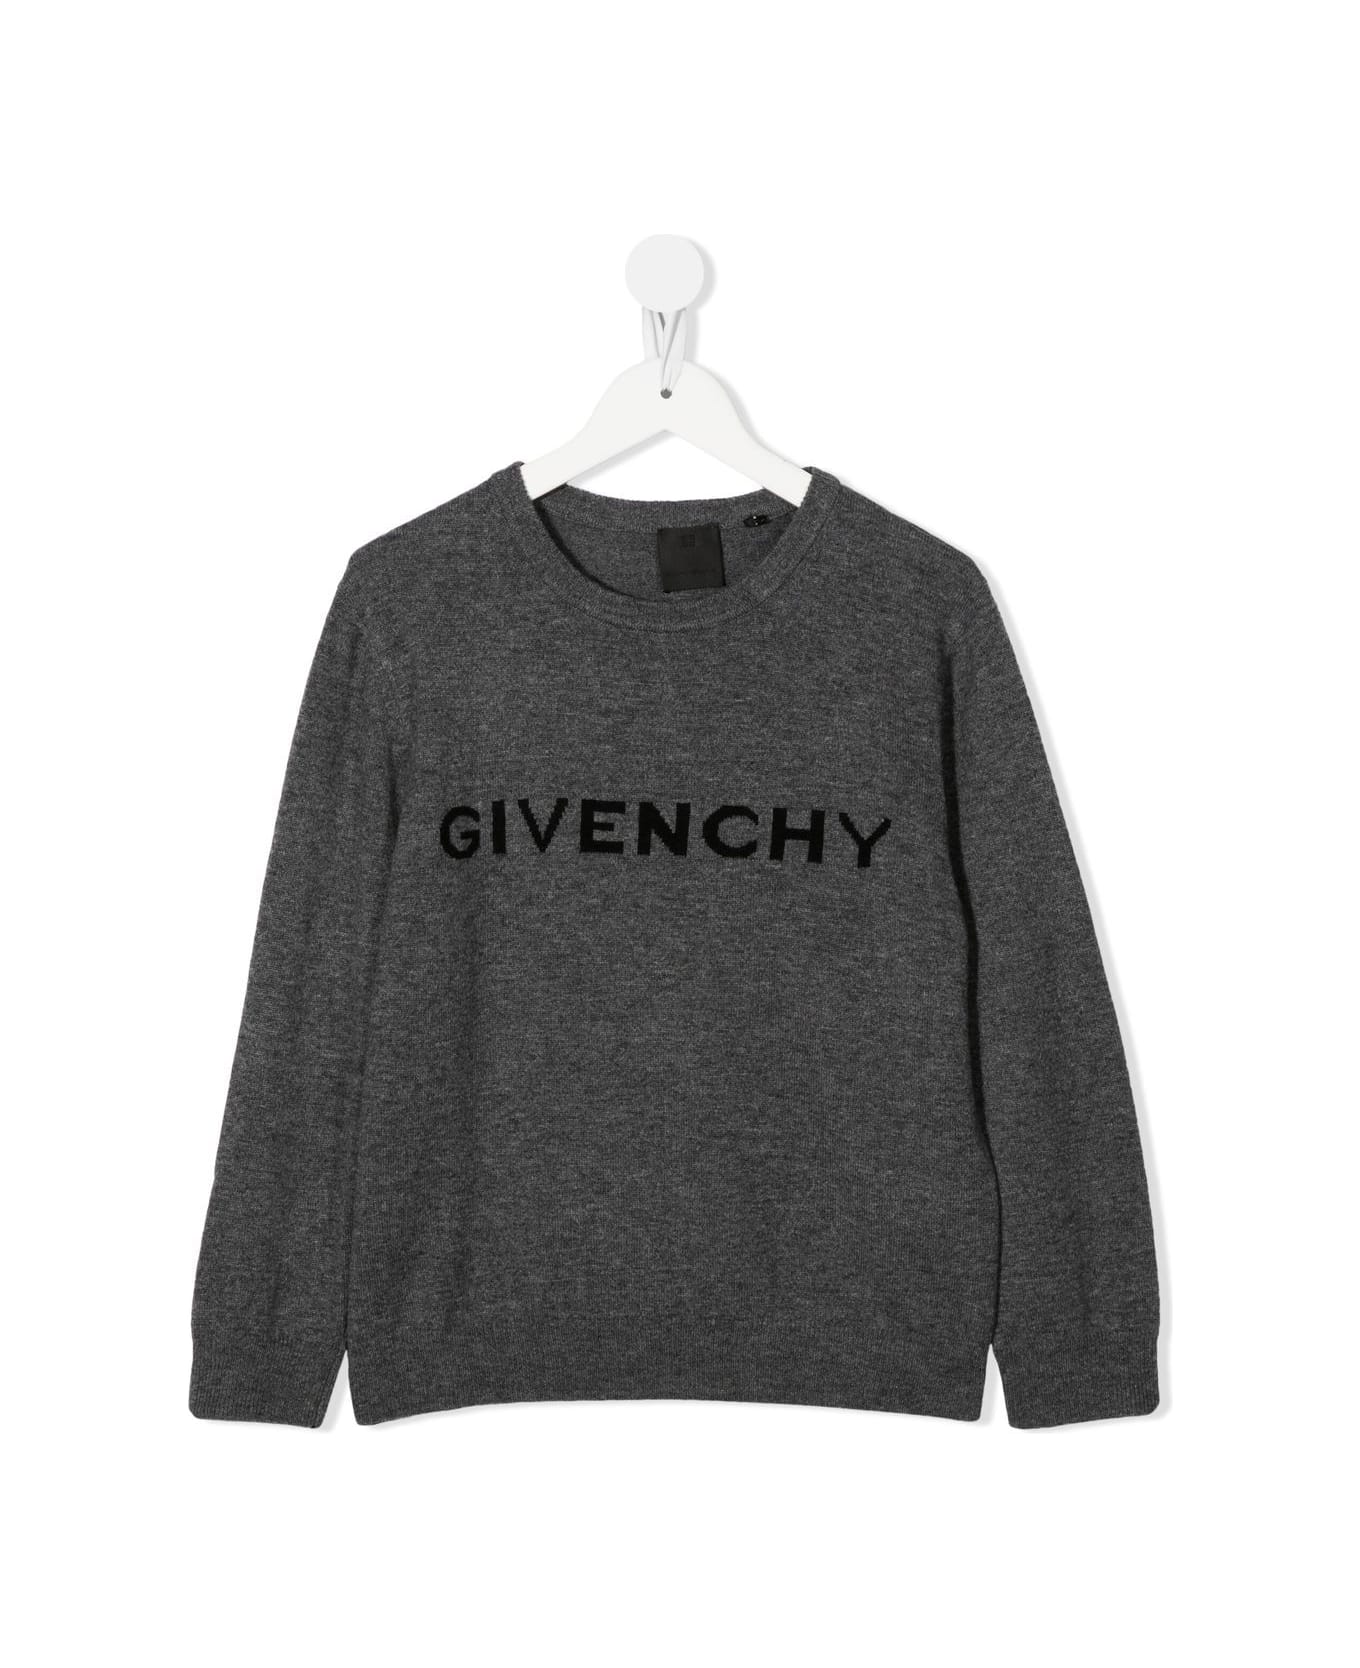 Givenchy Grey Wool Jumper - Grigio